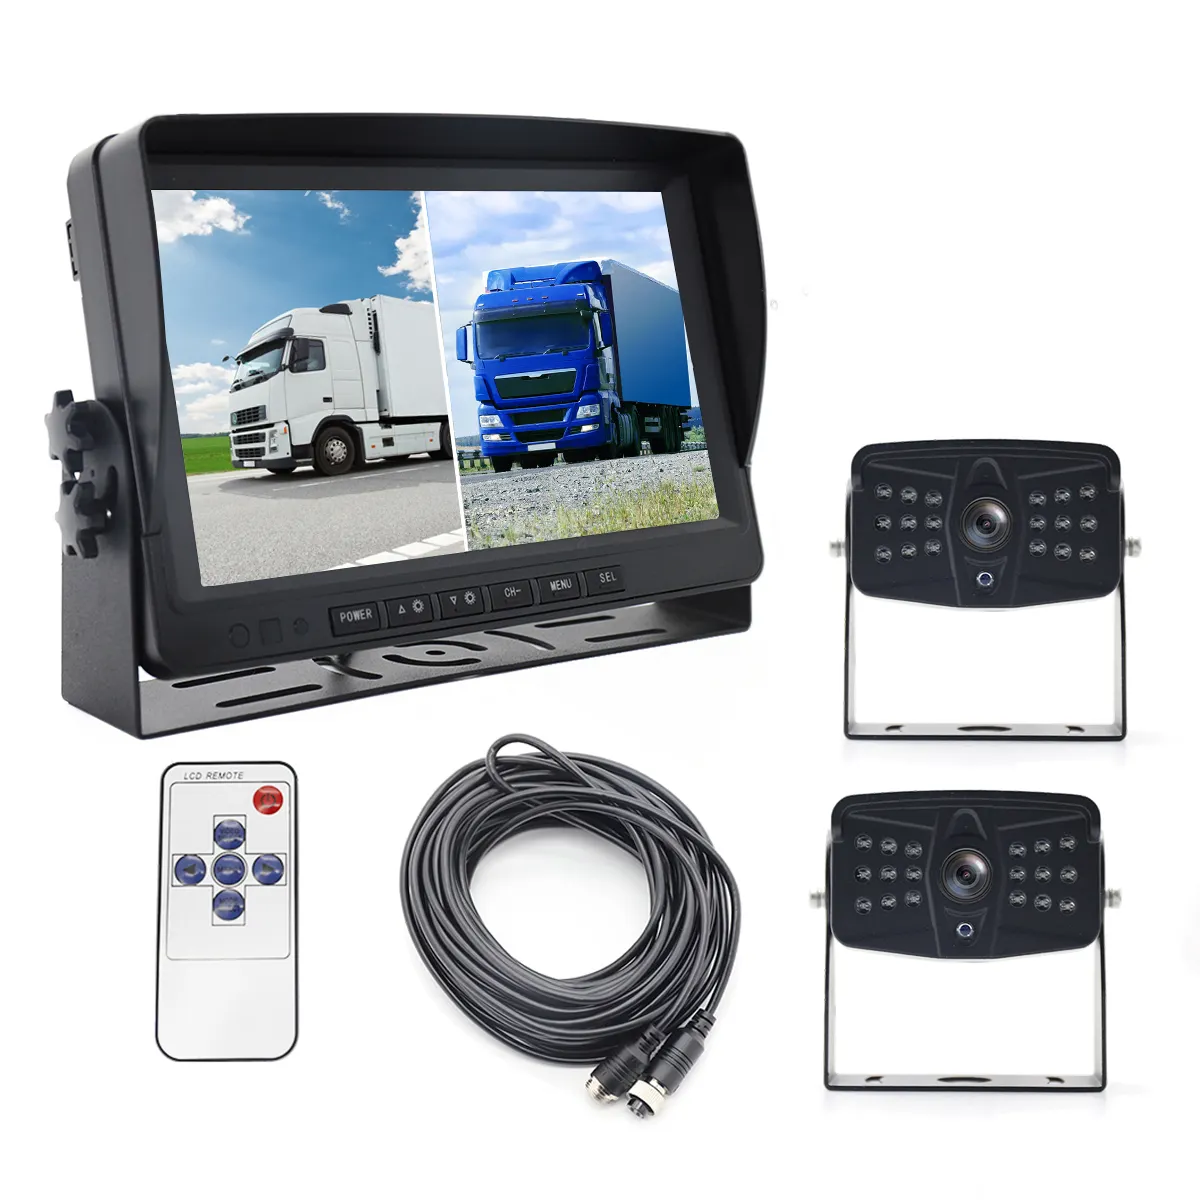 Monitor de carro para Auto 2 2 inch, monitor de montagem em telhado com tela dividida, gravador AHD LCD para caminhão, ônibus, RV, câmera de visão traseira, 2 canais